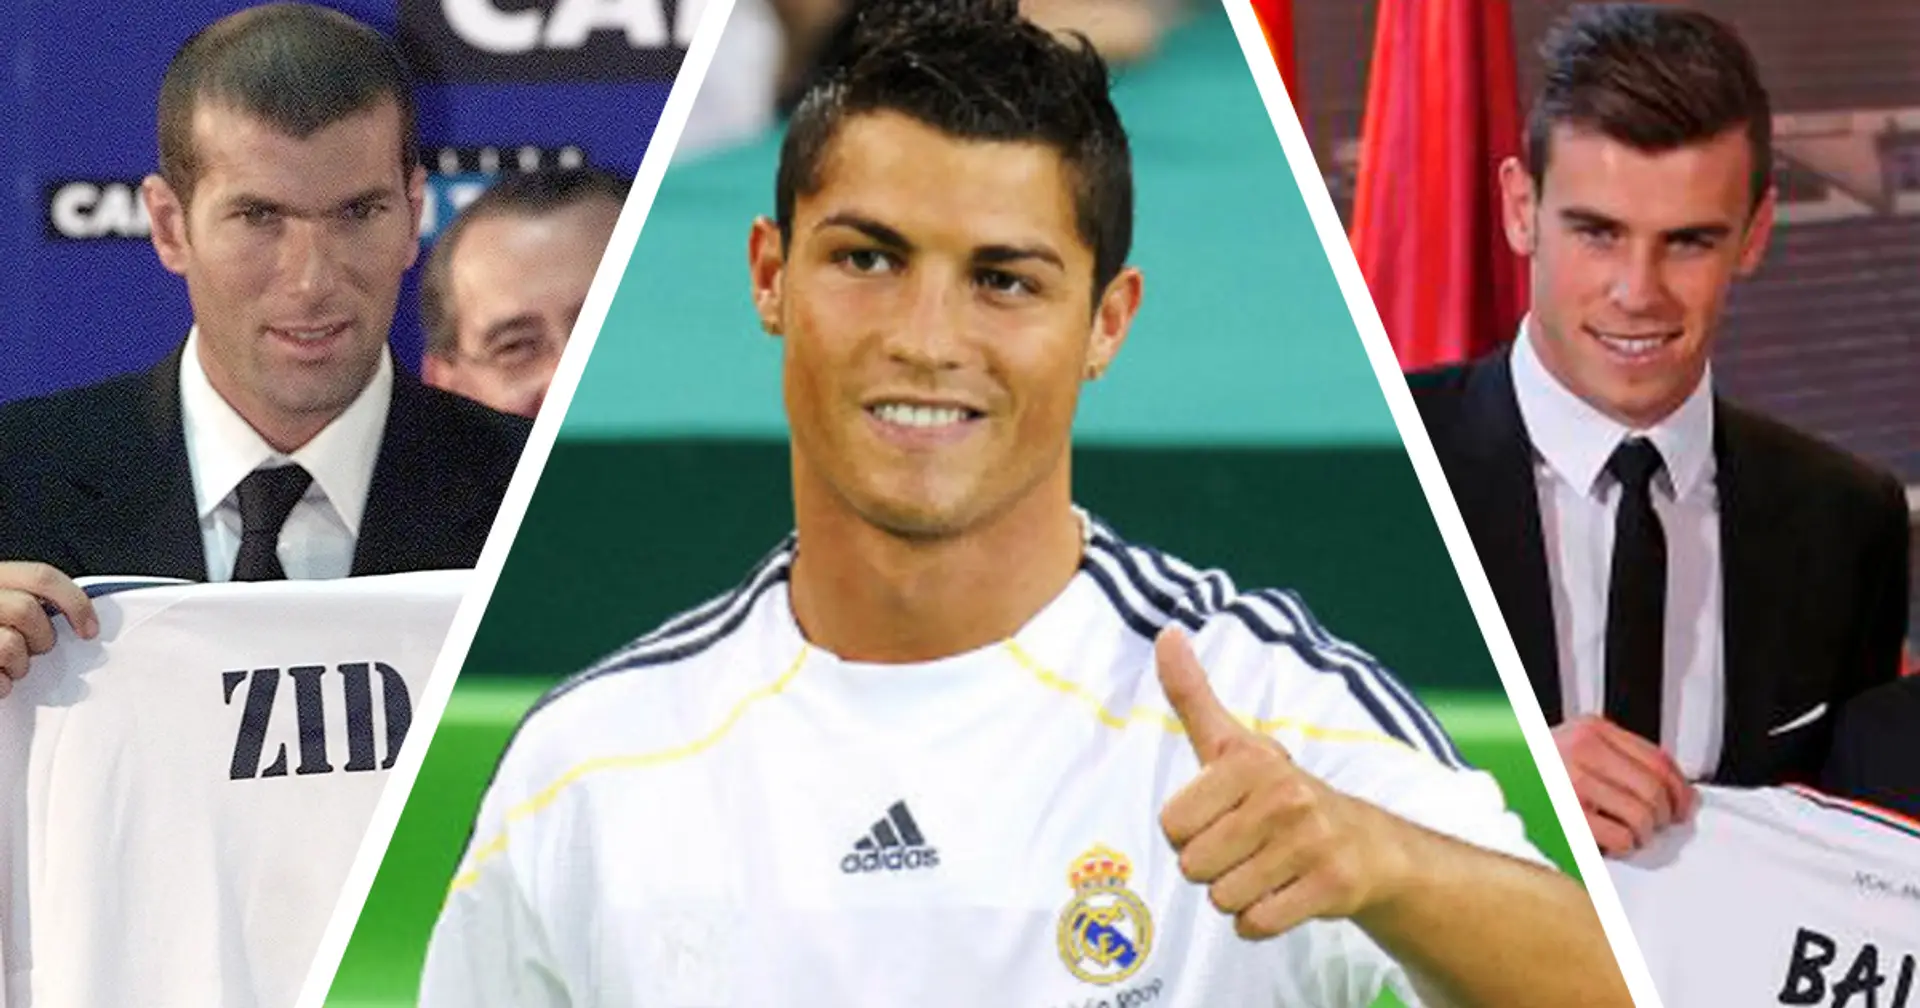 8 transferencias caras del Real Madrid que han merecido la pena